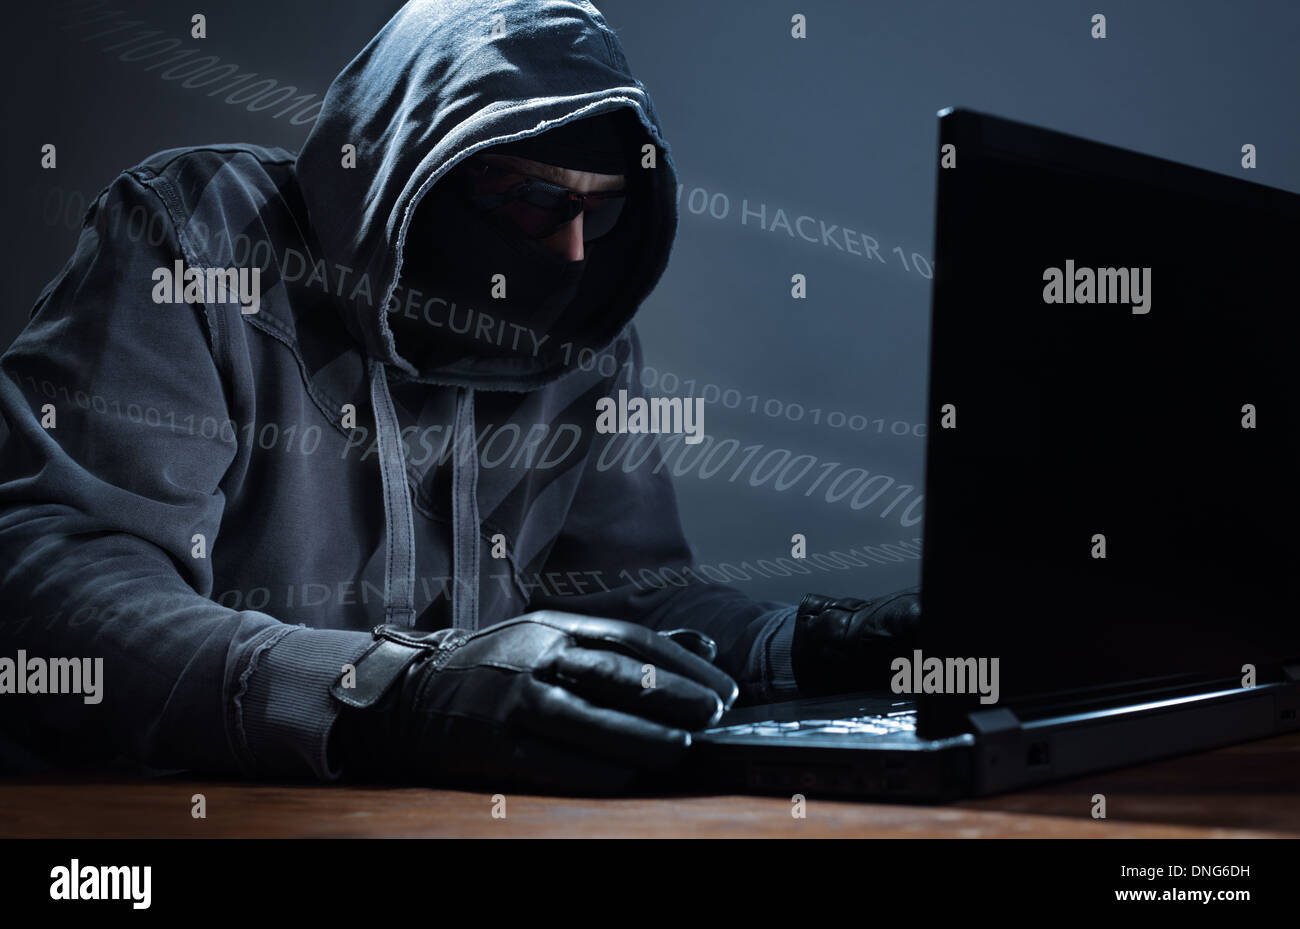 Hacker-stealing-data-from-a-laptop-DNG6D